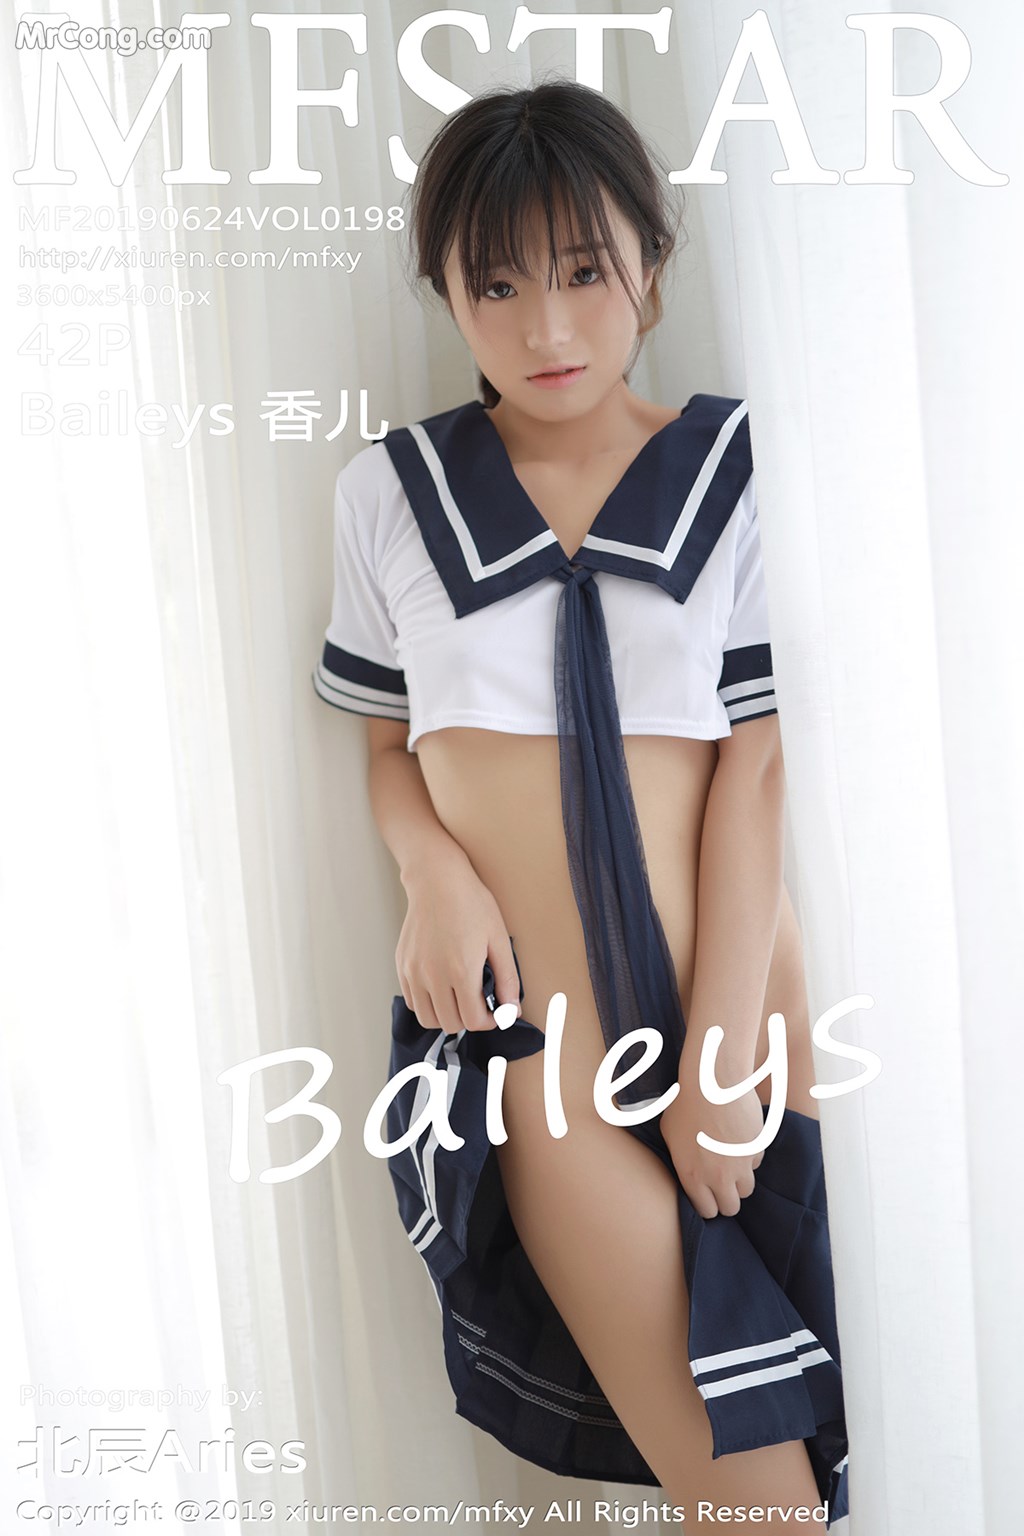 MFStar Vol.198: Baileys 香 儿 (43 pictures) photo 1-0